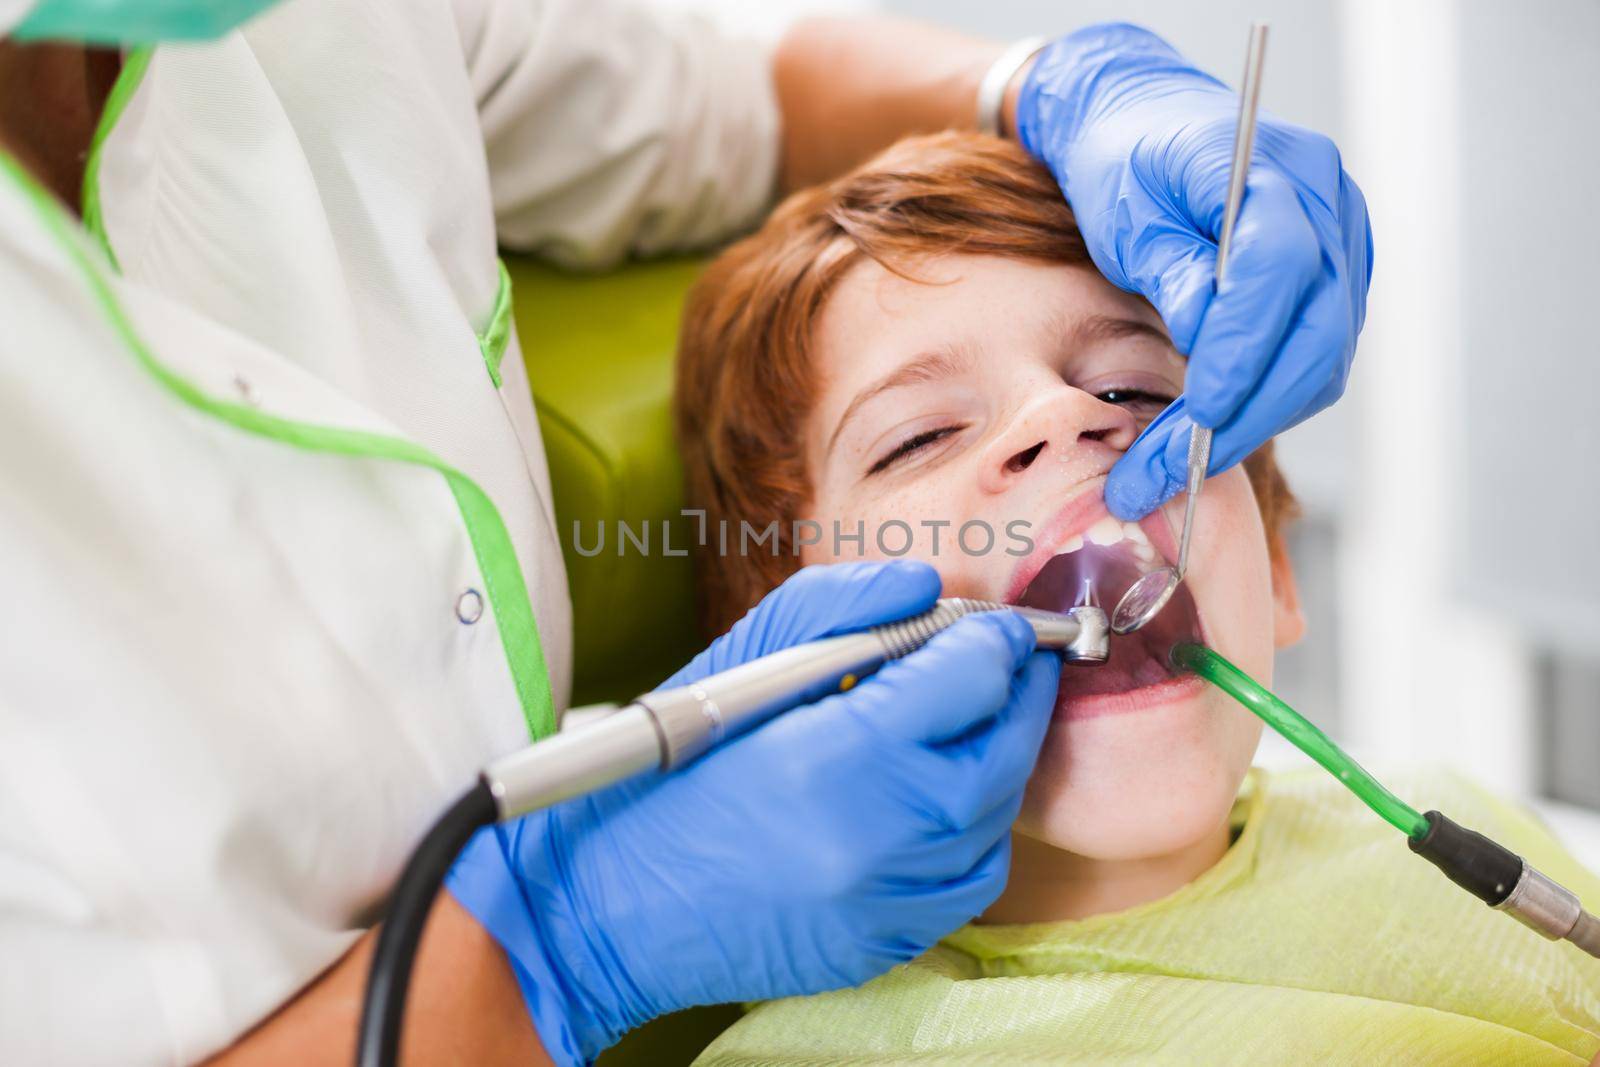 Dentist is repairing teeth of a little boy.